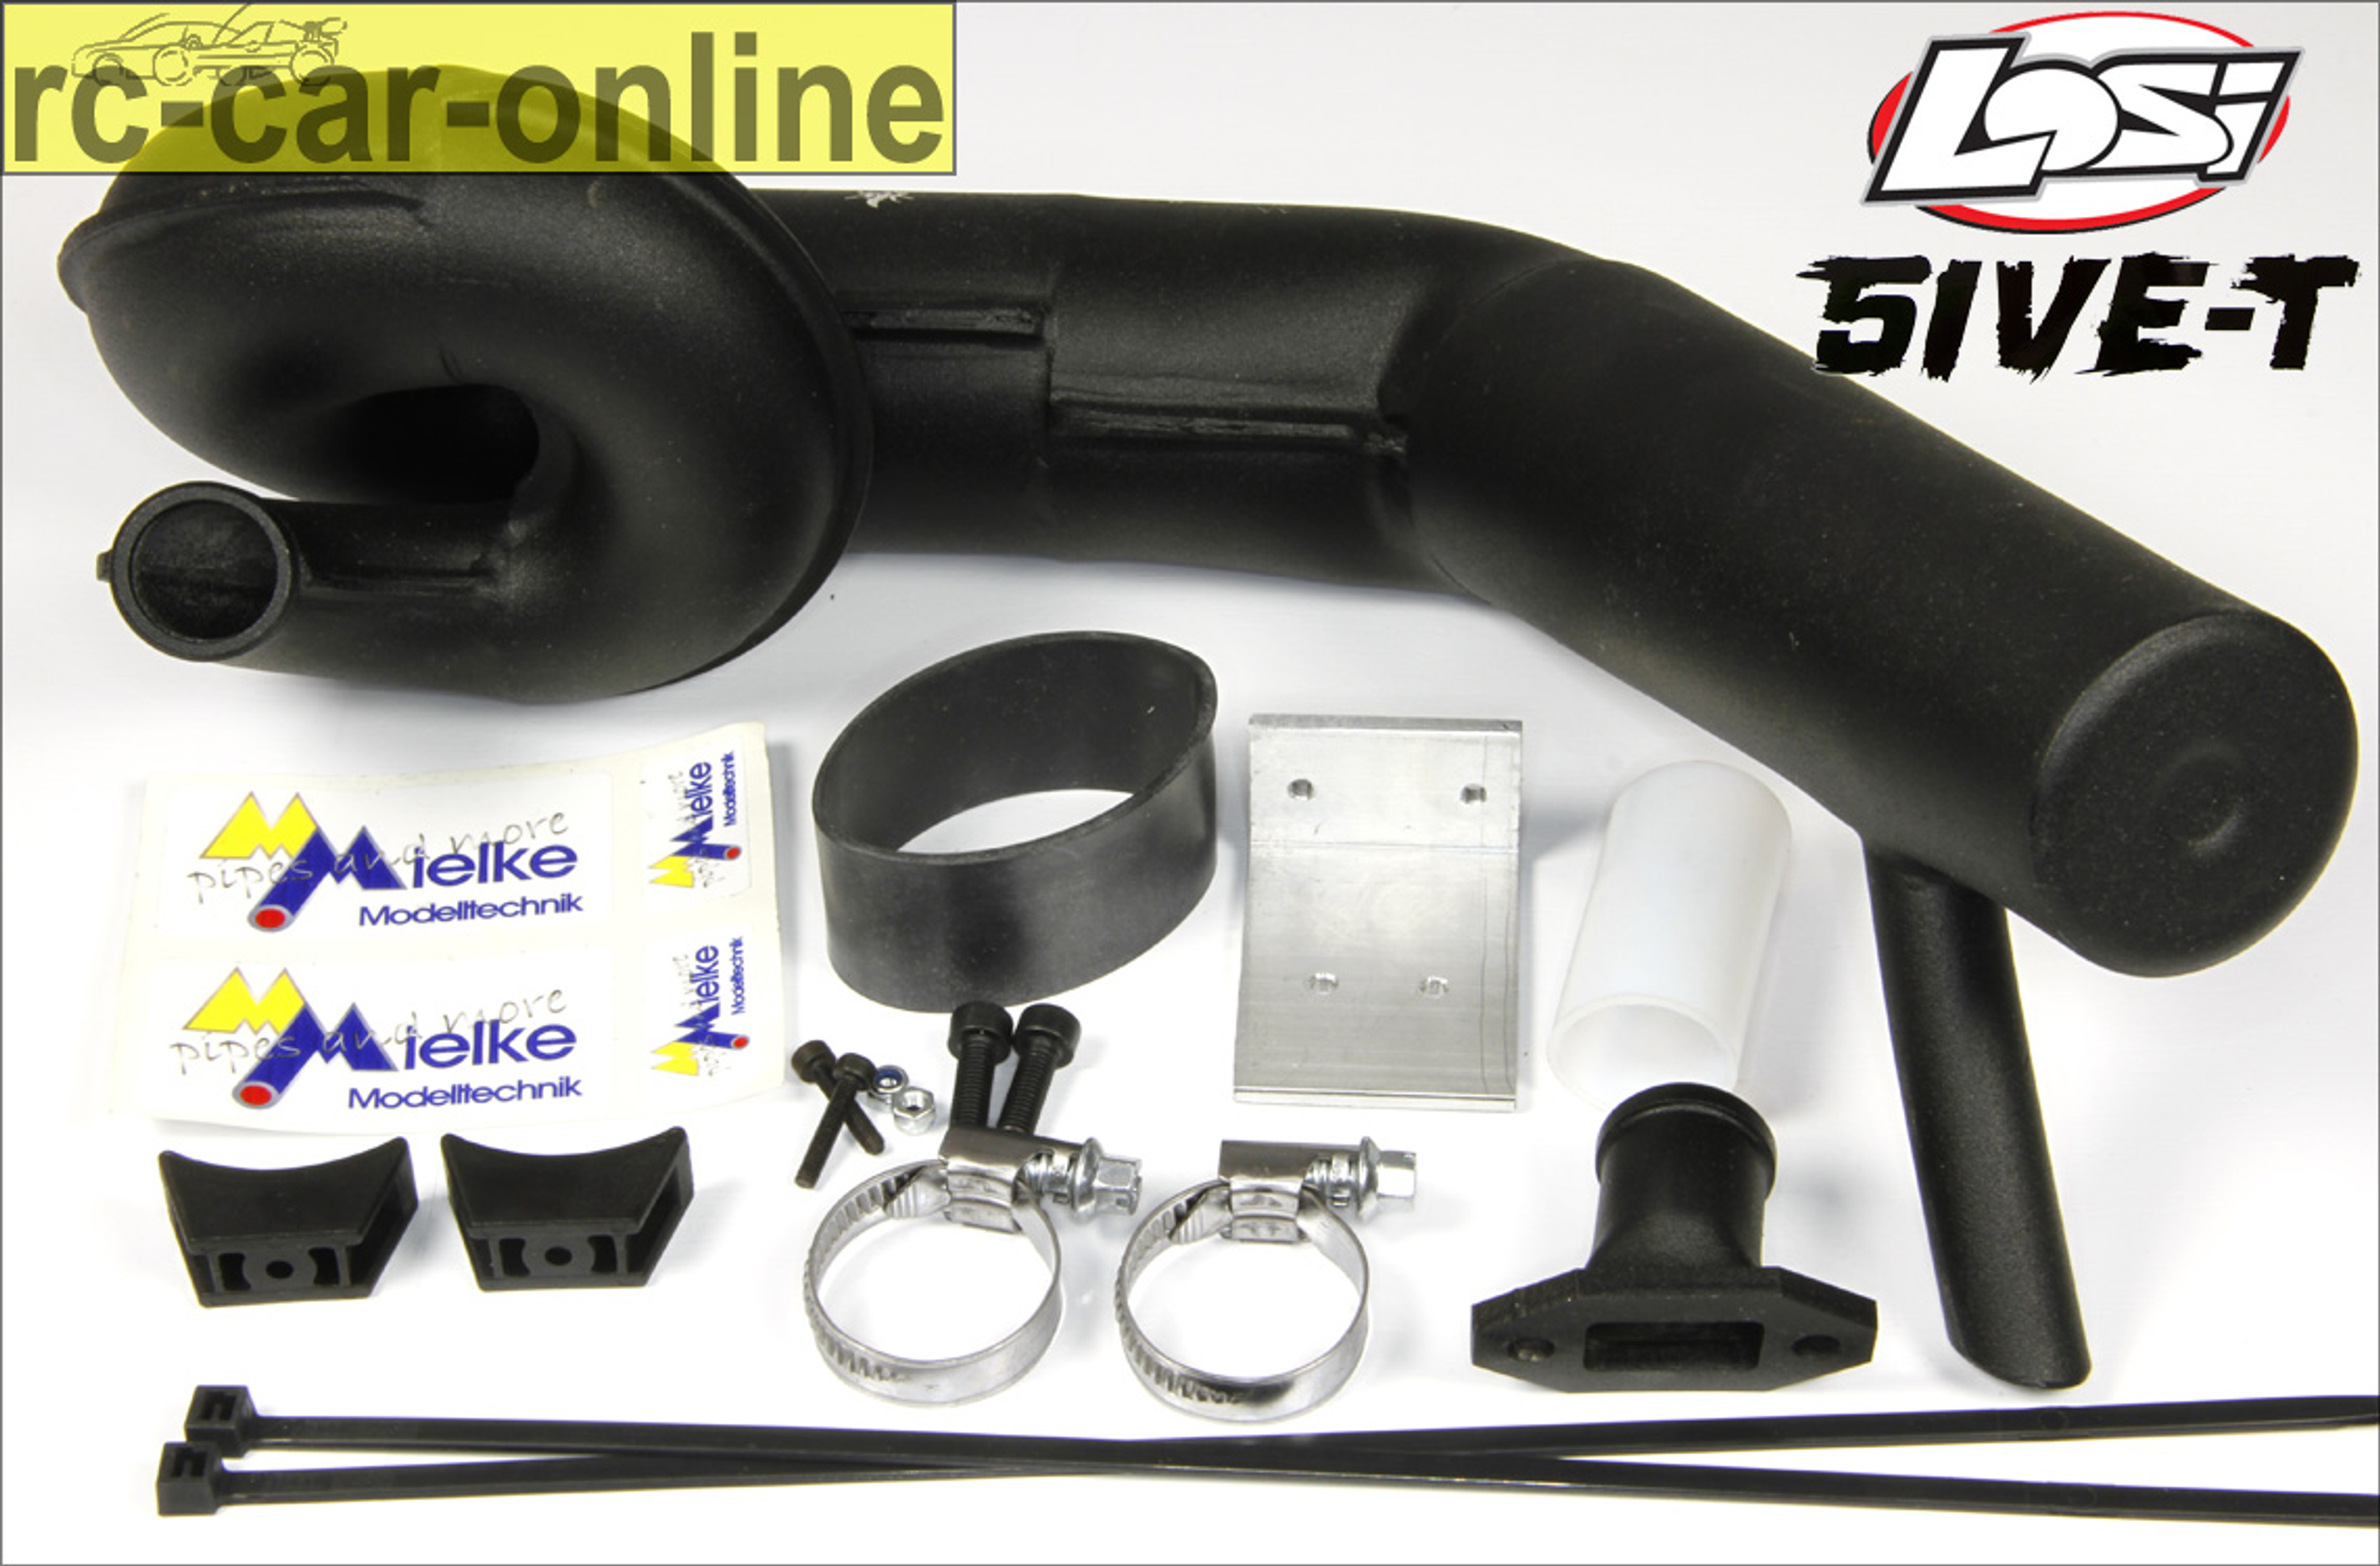 Mielke 5185 Big Power Schalldämpfer Set für Losi 5ive-T/2.0 und Mini